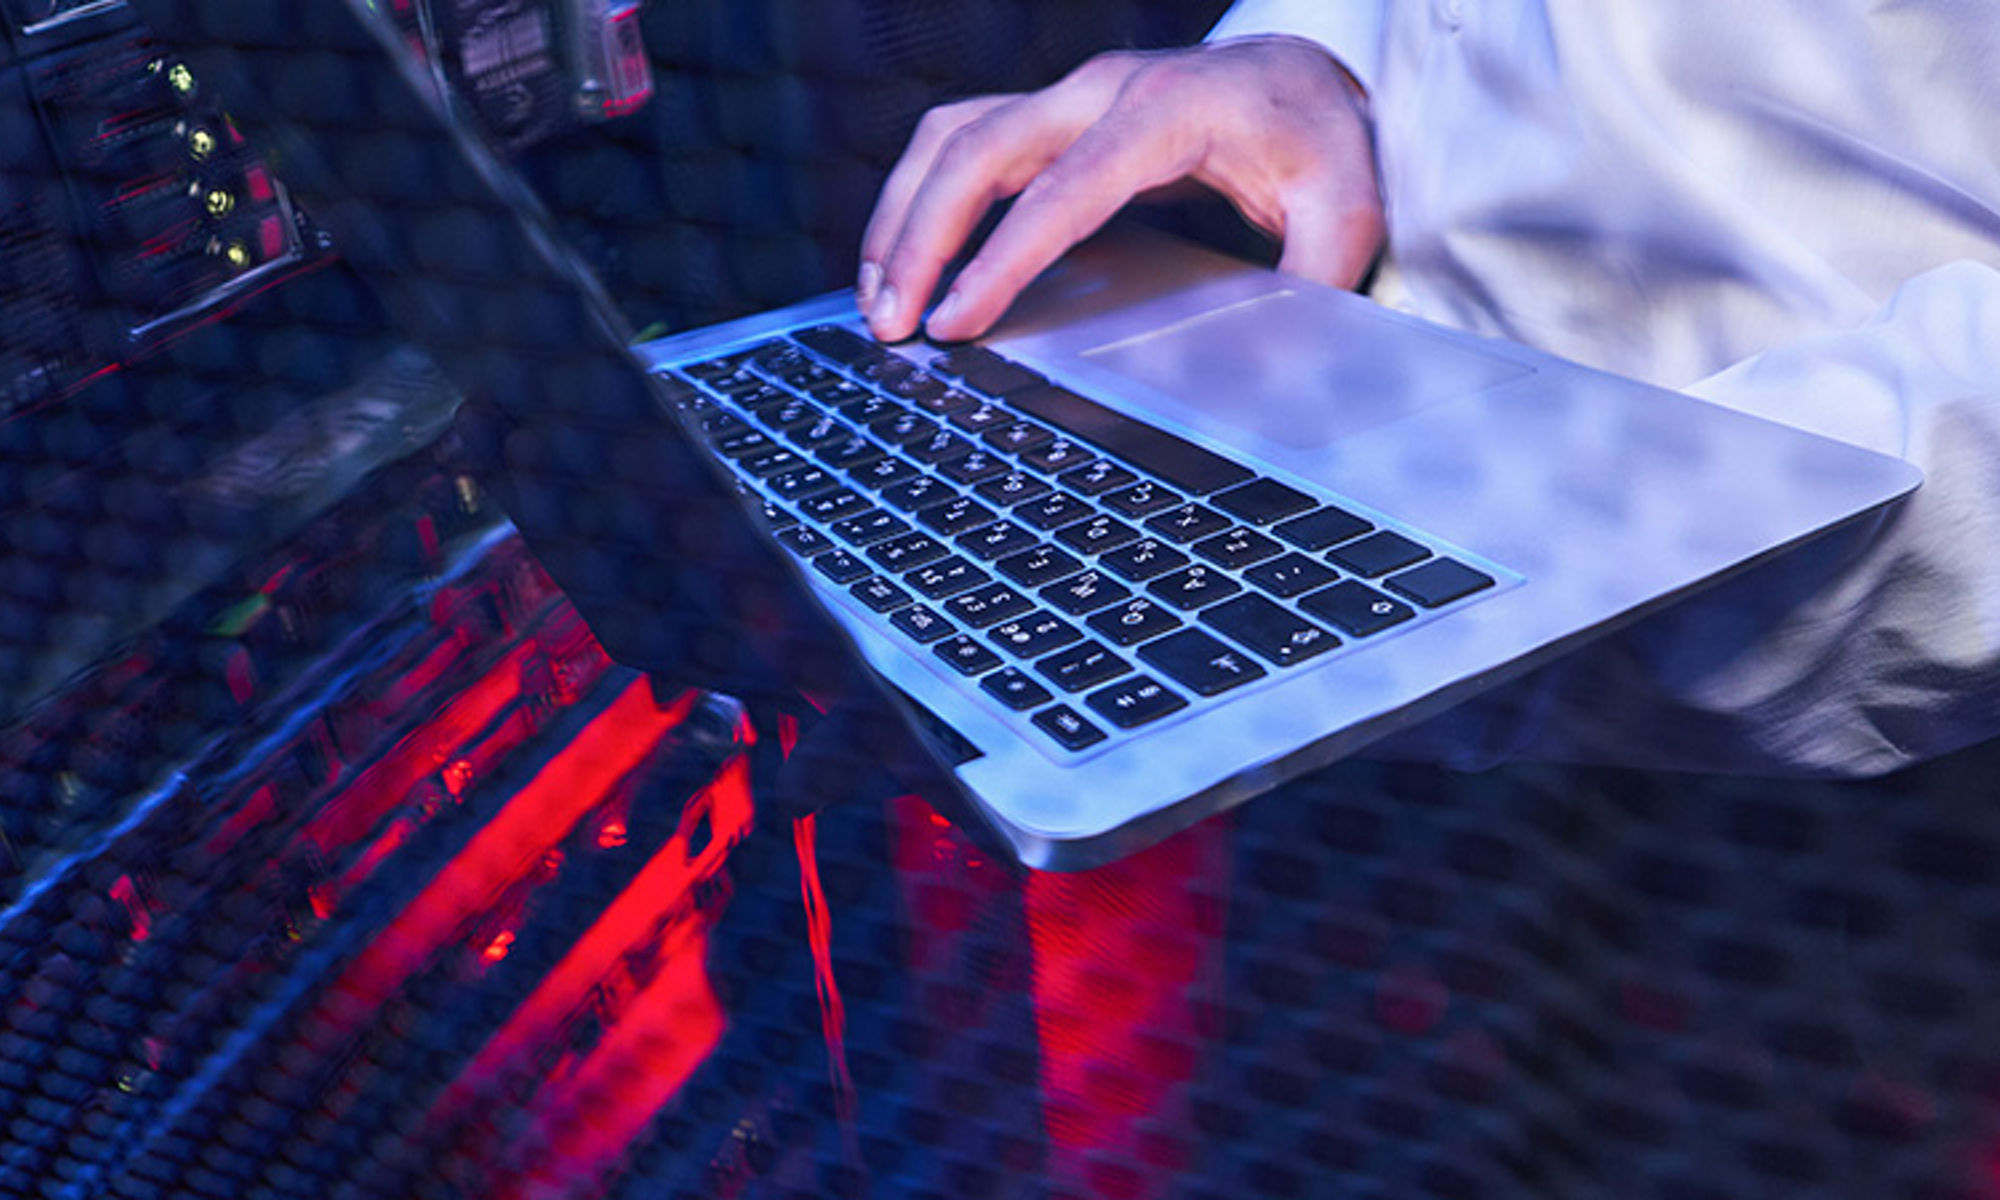 帶紅色底光的透明桌面上的筆記型電腦，以及正在觸摸鍵盤的手。